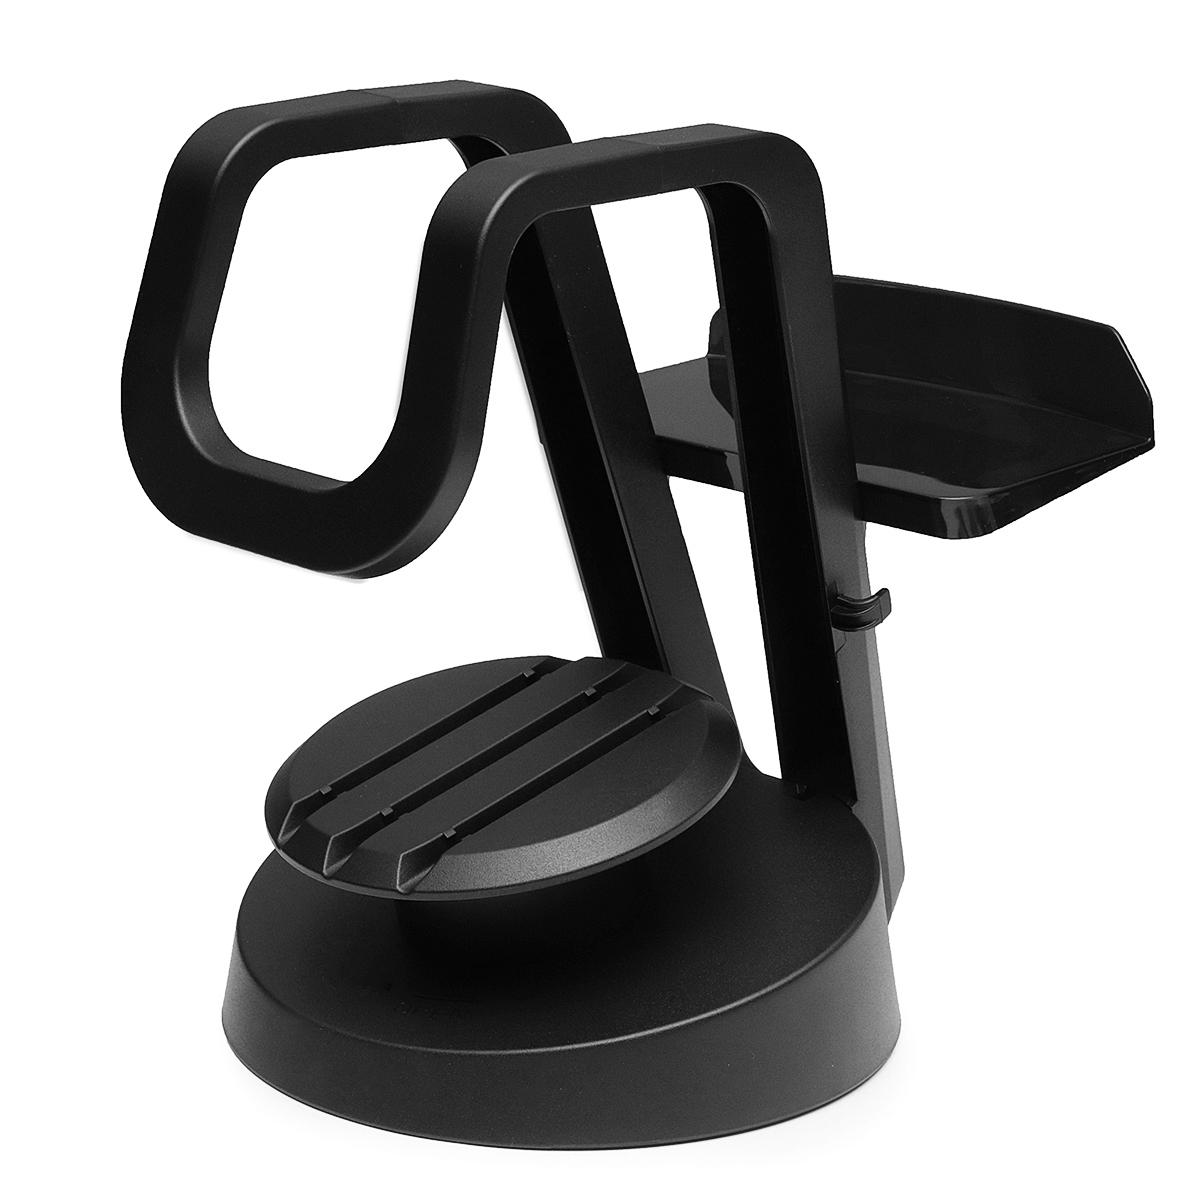 Universele VR-bril Stand Holder voor PS VR / Oculus Rift / HTC Vive / Gear VR